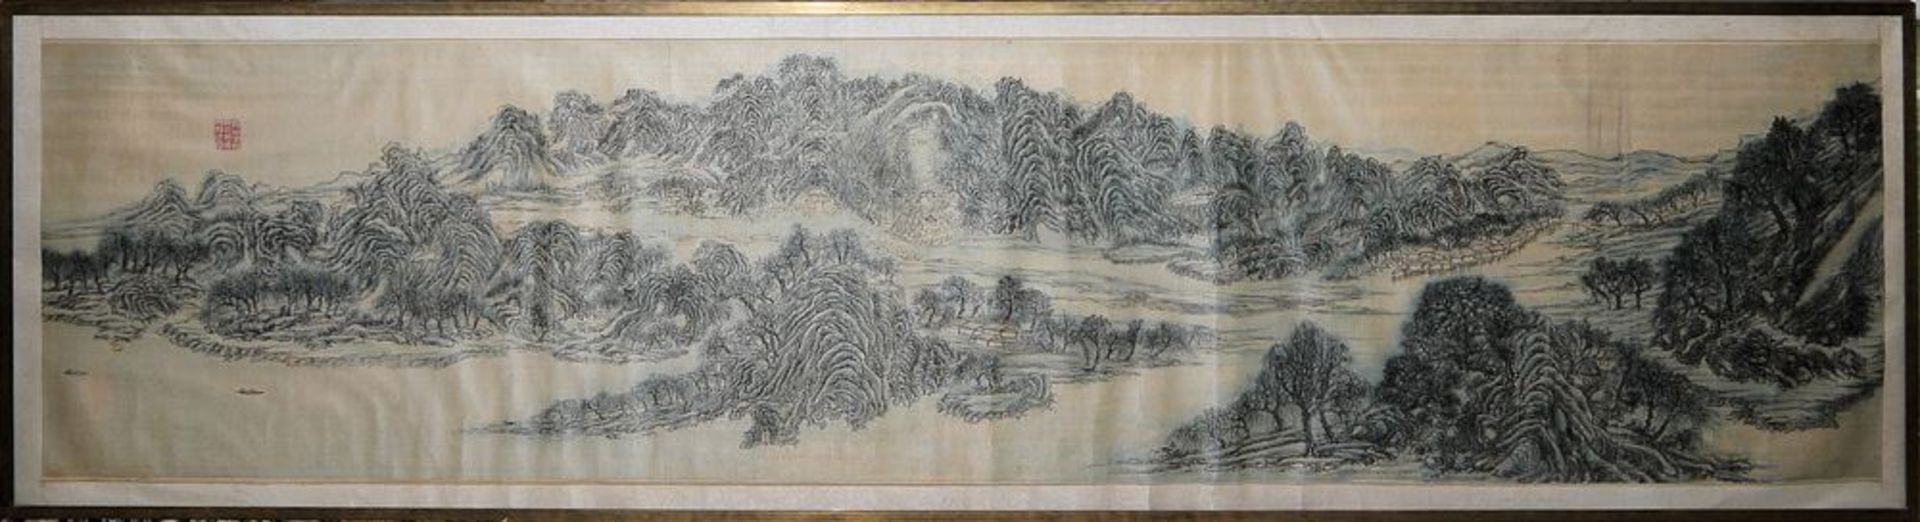 Großes Panoramabild der Qing-Zeit, China, wohl 18./19.Jh. oder früher